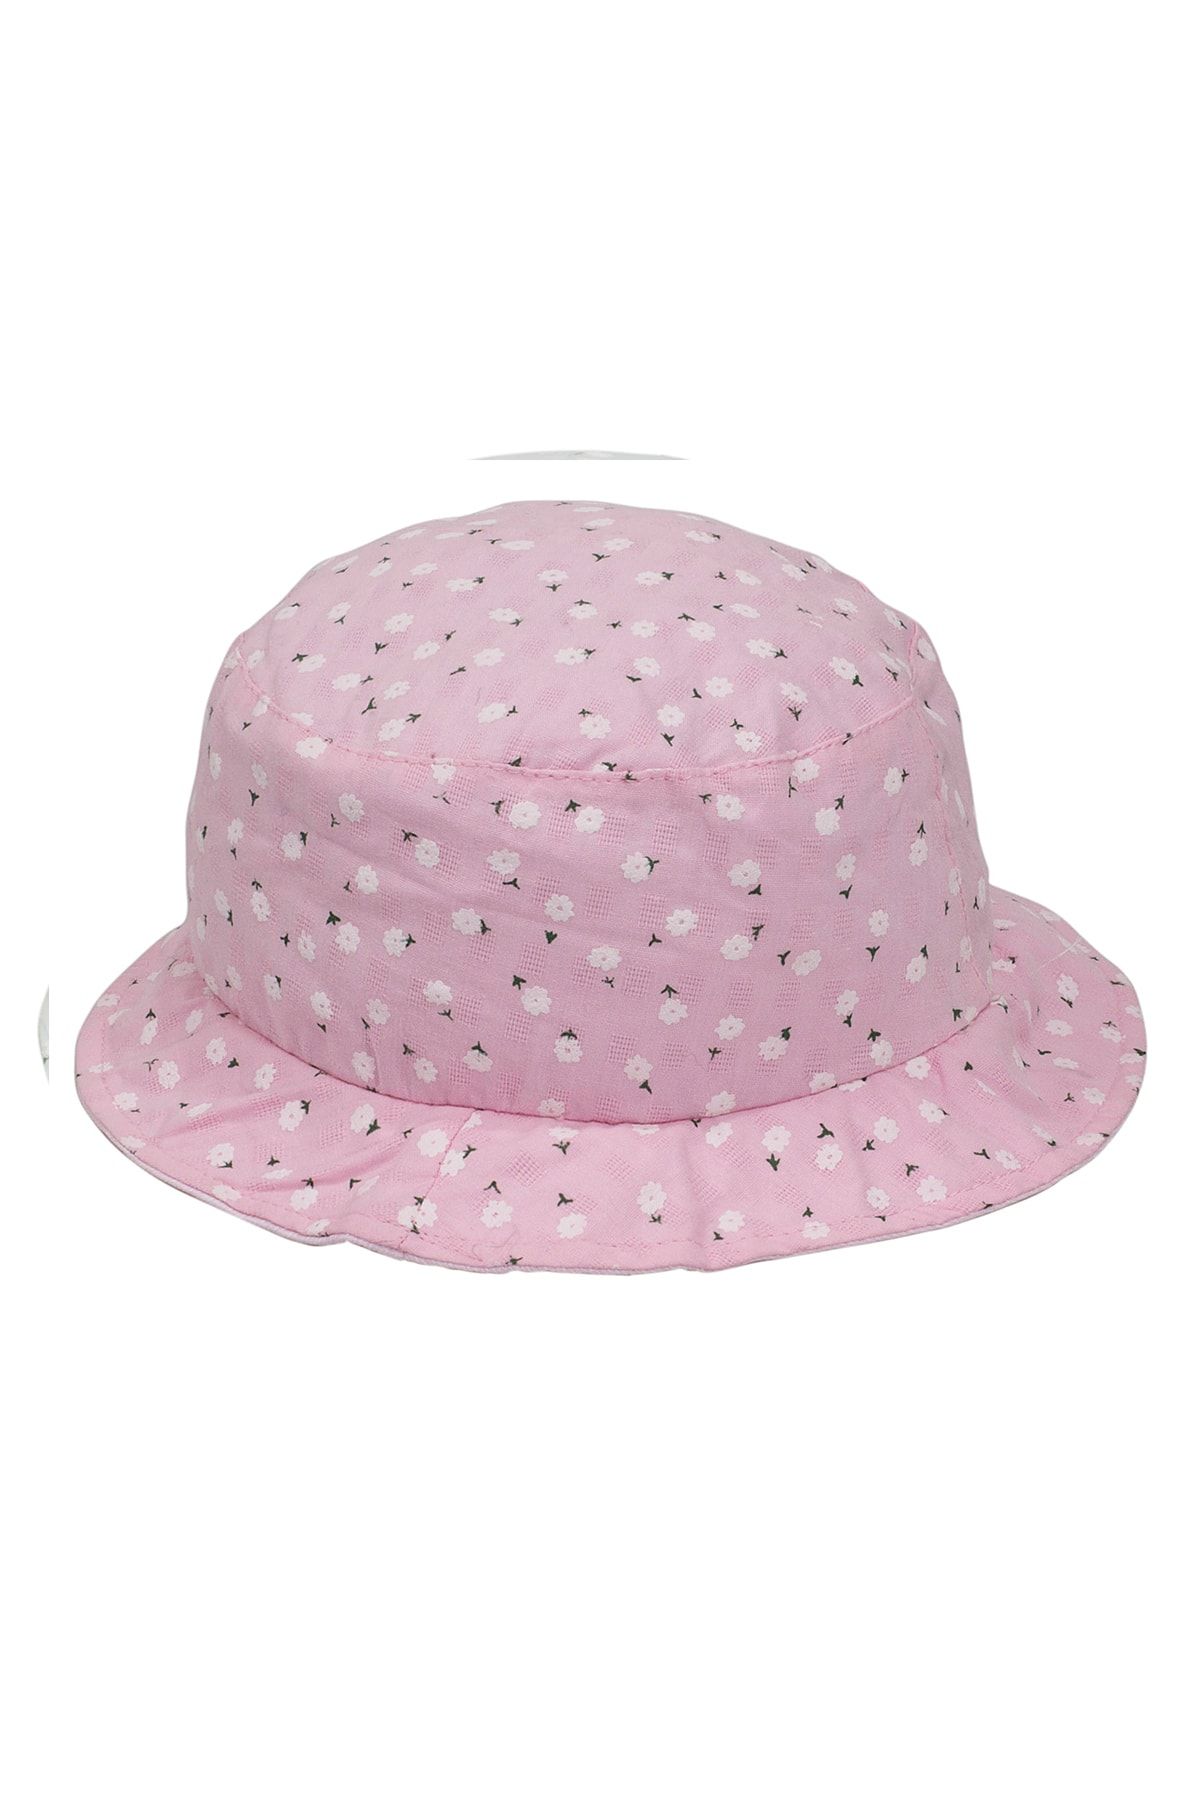 Bay Şapkacı Çiçekli Kız Çocuk Bermuda Şapka 2112